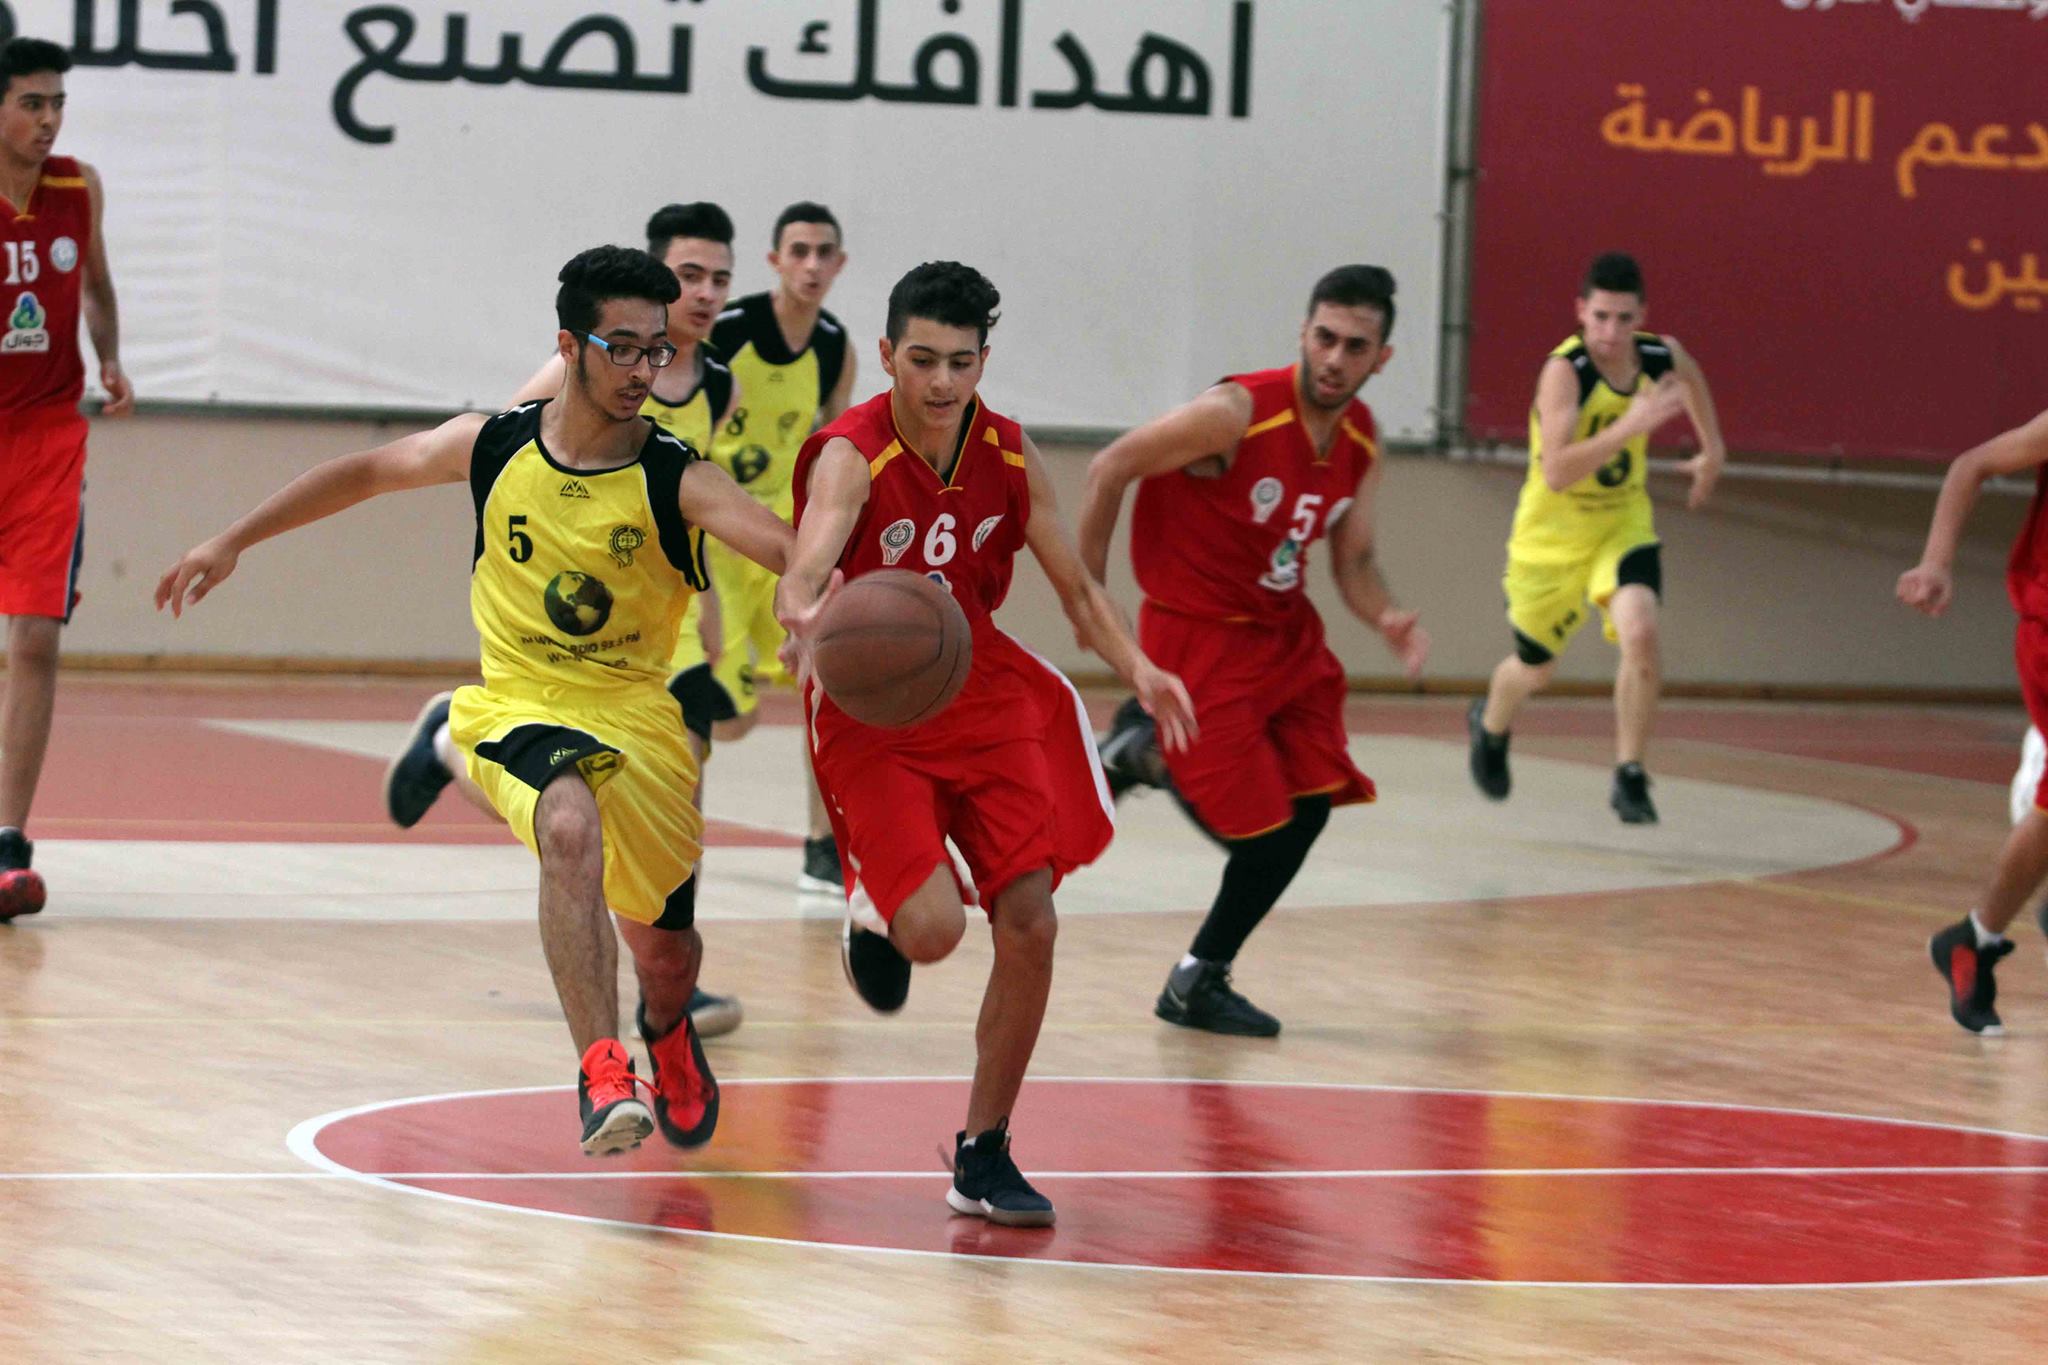 انتصاران للراعي و أرثوذكسي رام الله في انطلاق دوري الناشئين لكرة السلة